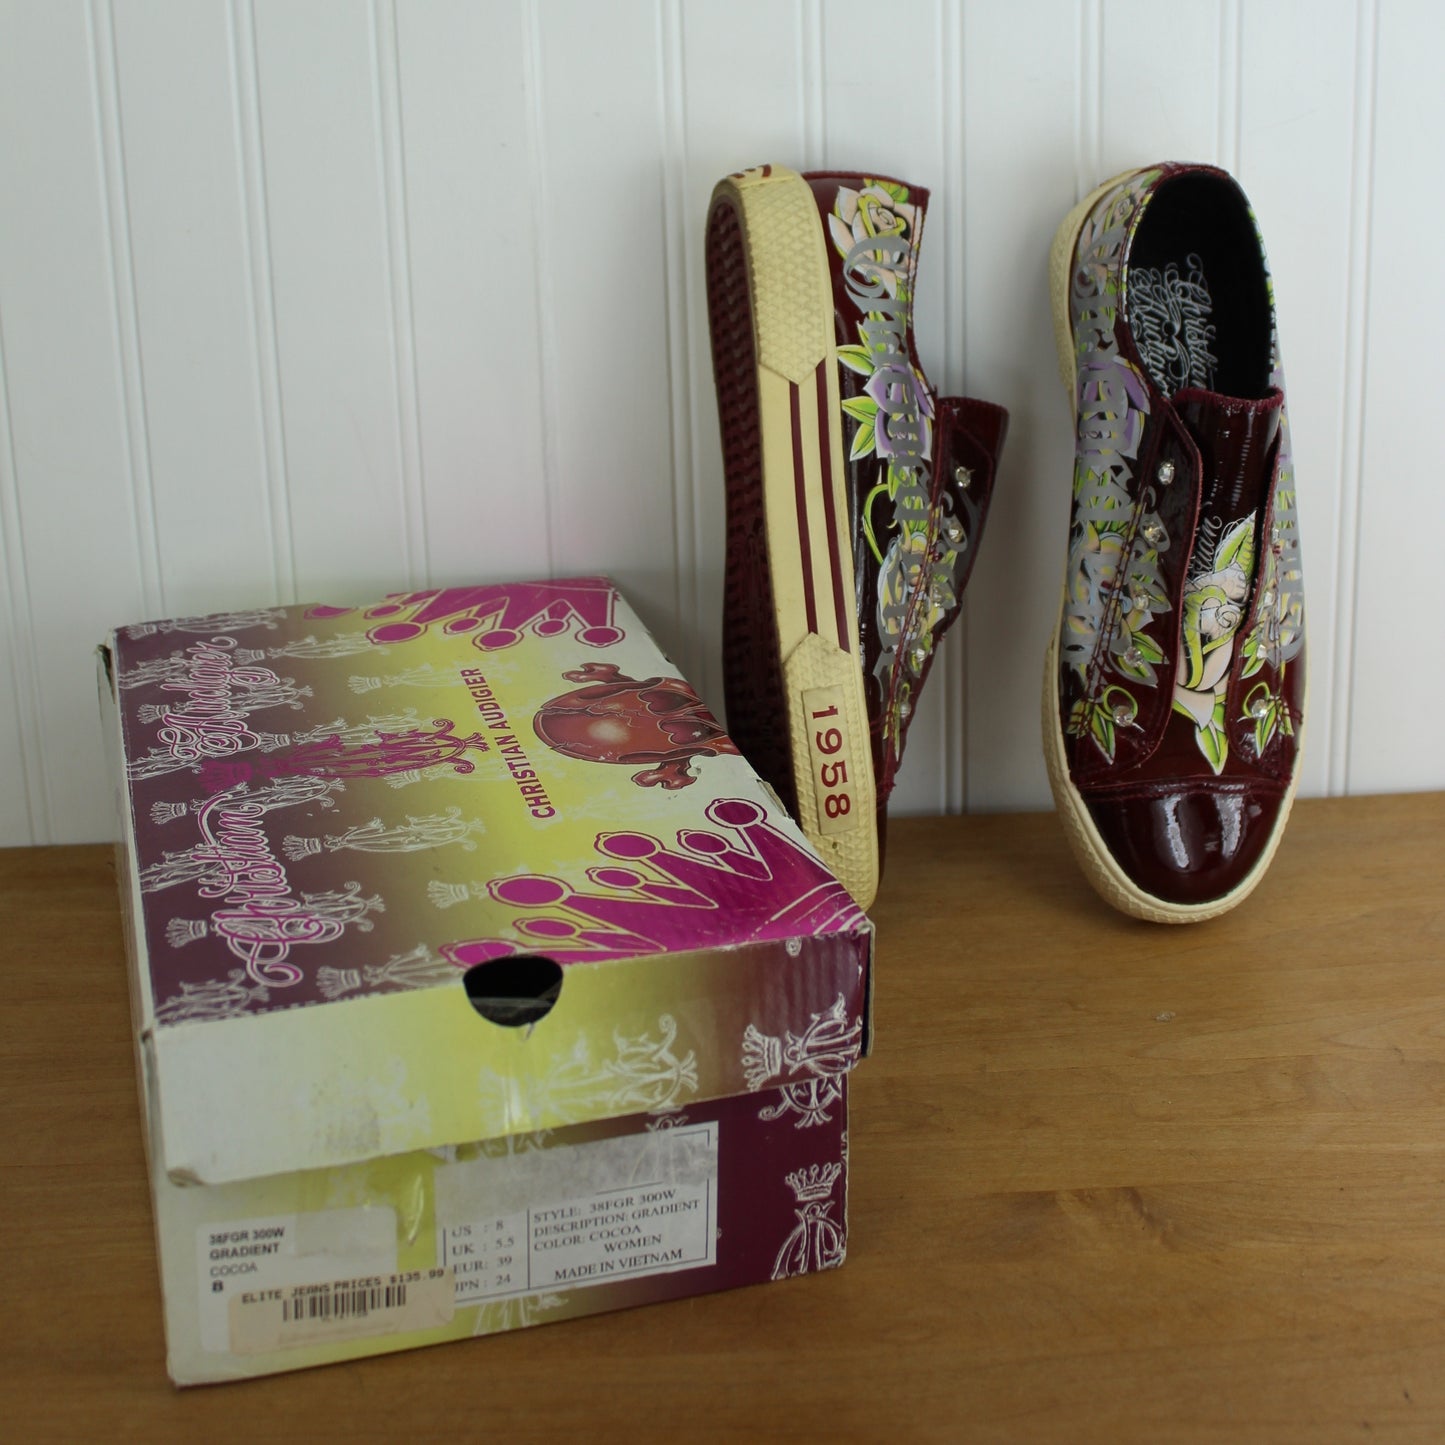 Christian Audigier Leather Shoes 195 Est. Charmed Life Skull Crossbones Rhinestones Flowers Women's 8